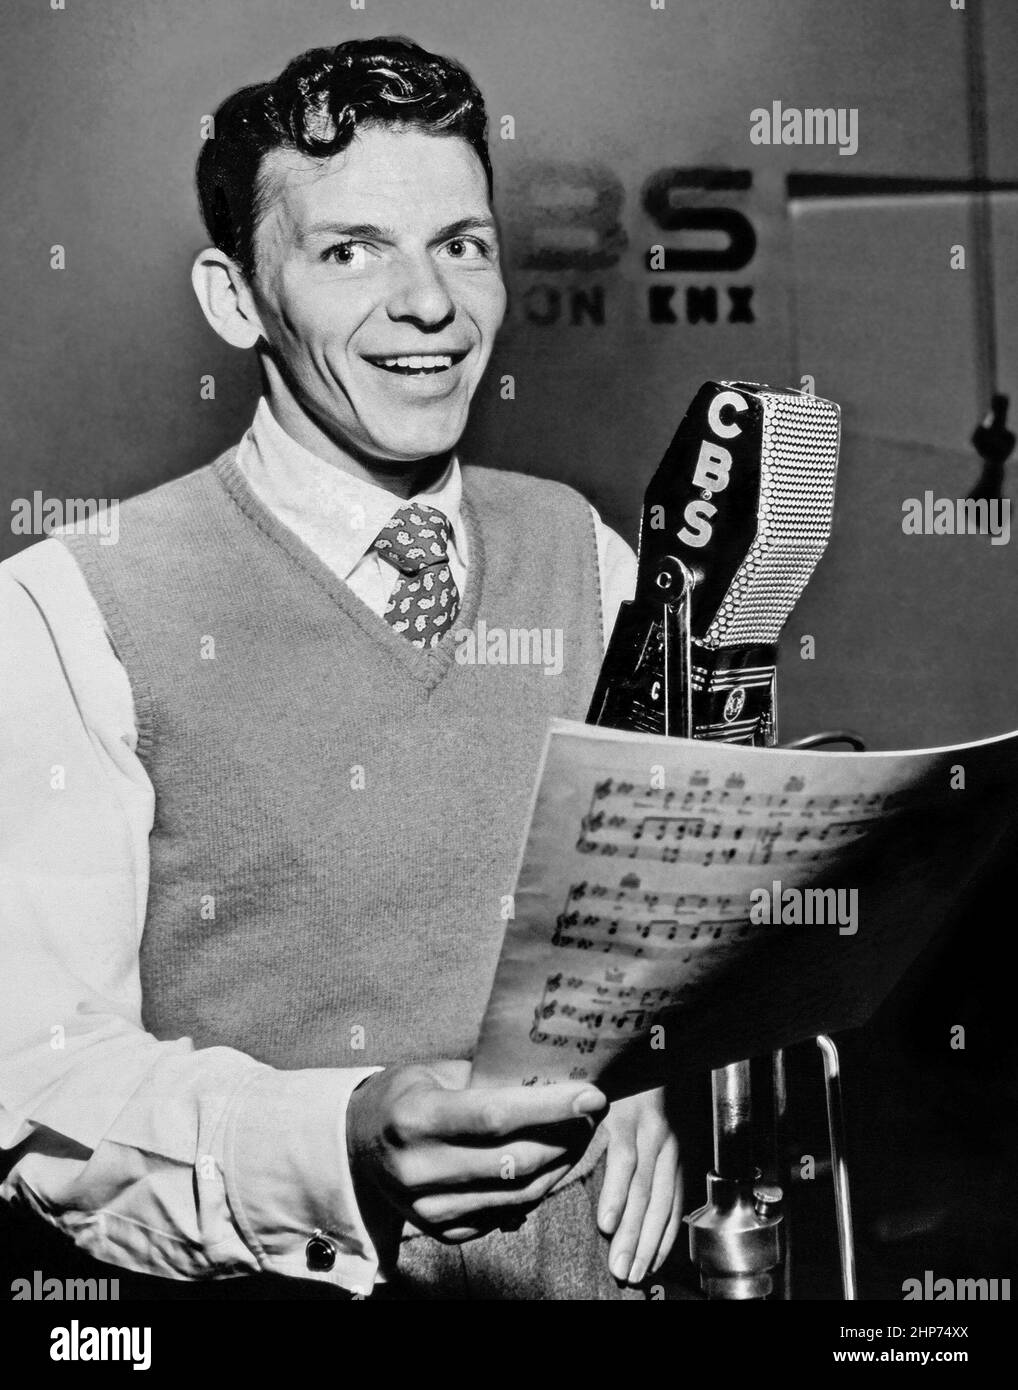 Foto pubblicitaria di Frank Sinatra nel 1944 con un microfono CBS, che promuove lo spettacolo Frank Sinatra sulla radio CBS Foto Stock